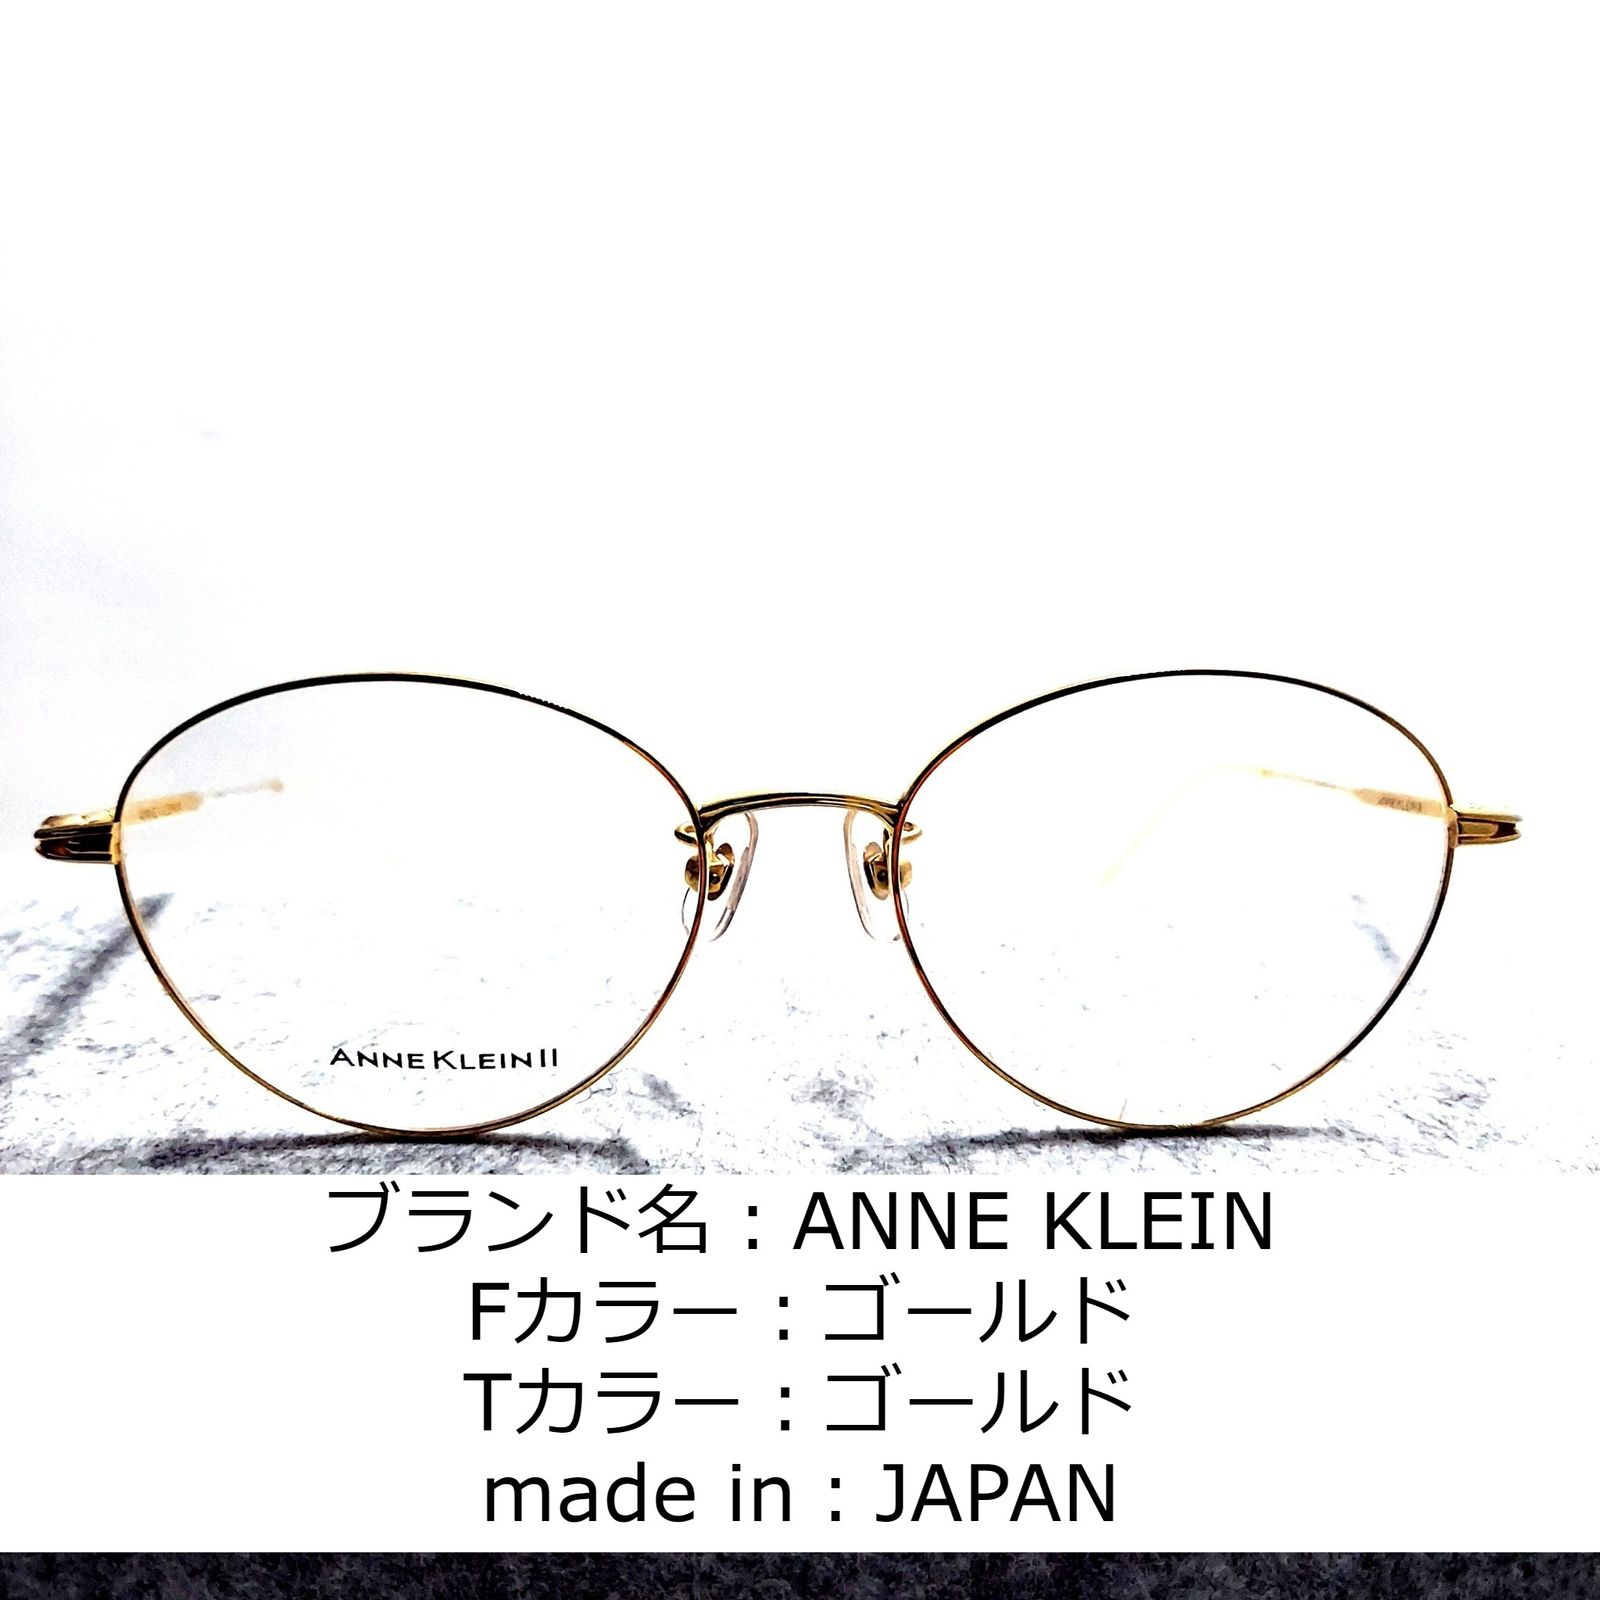 No.1021-メガネ ANNE KLEIN【フレームのみ価格】 - スッキリ生活専門店